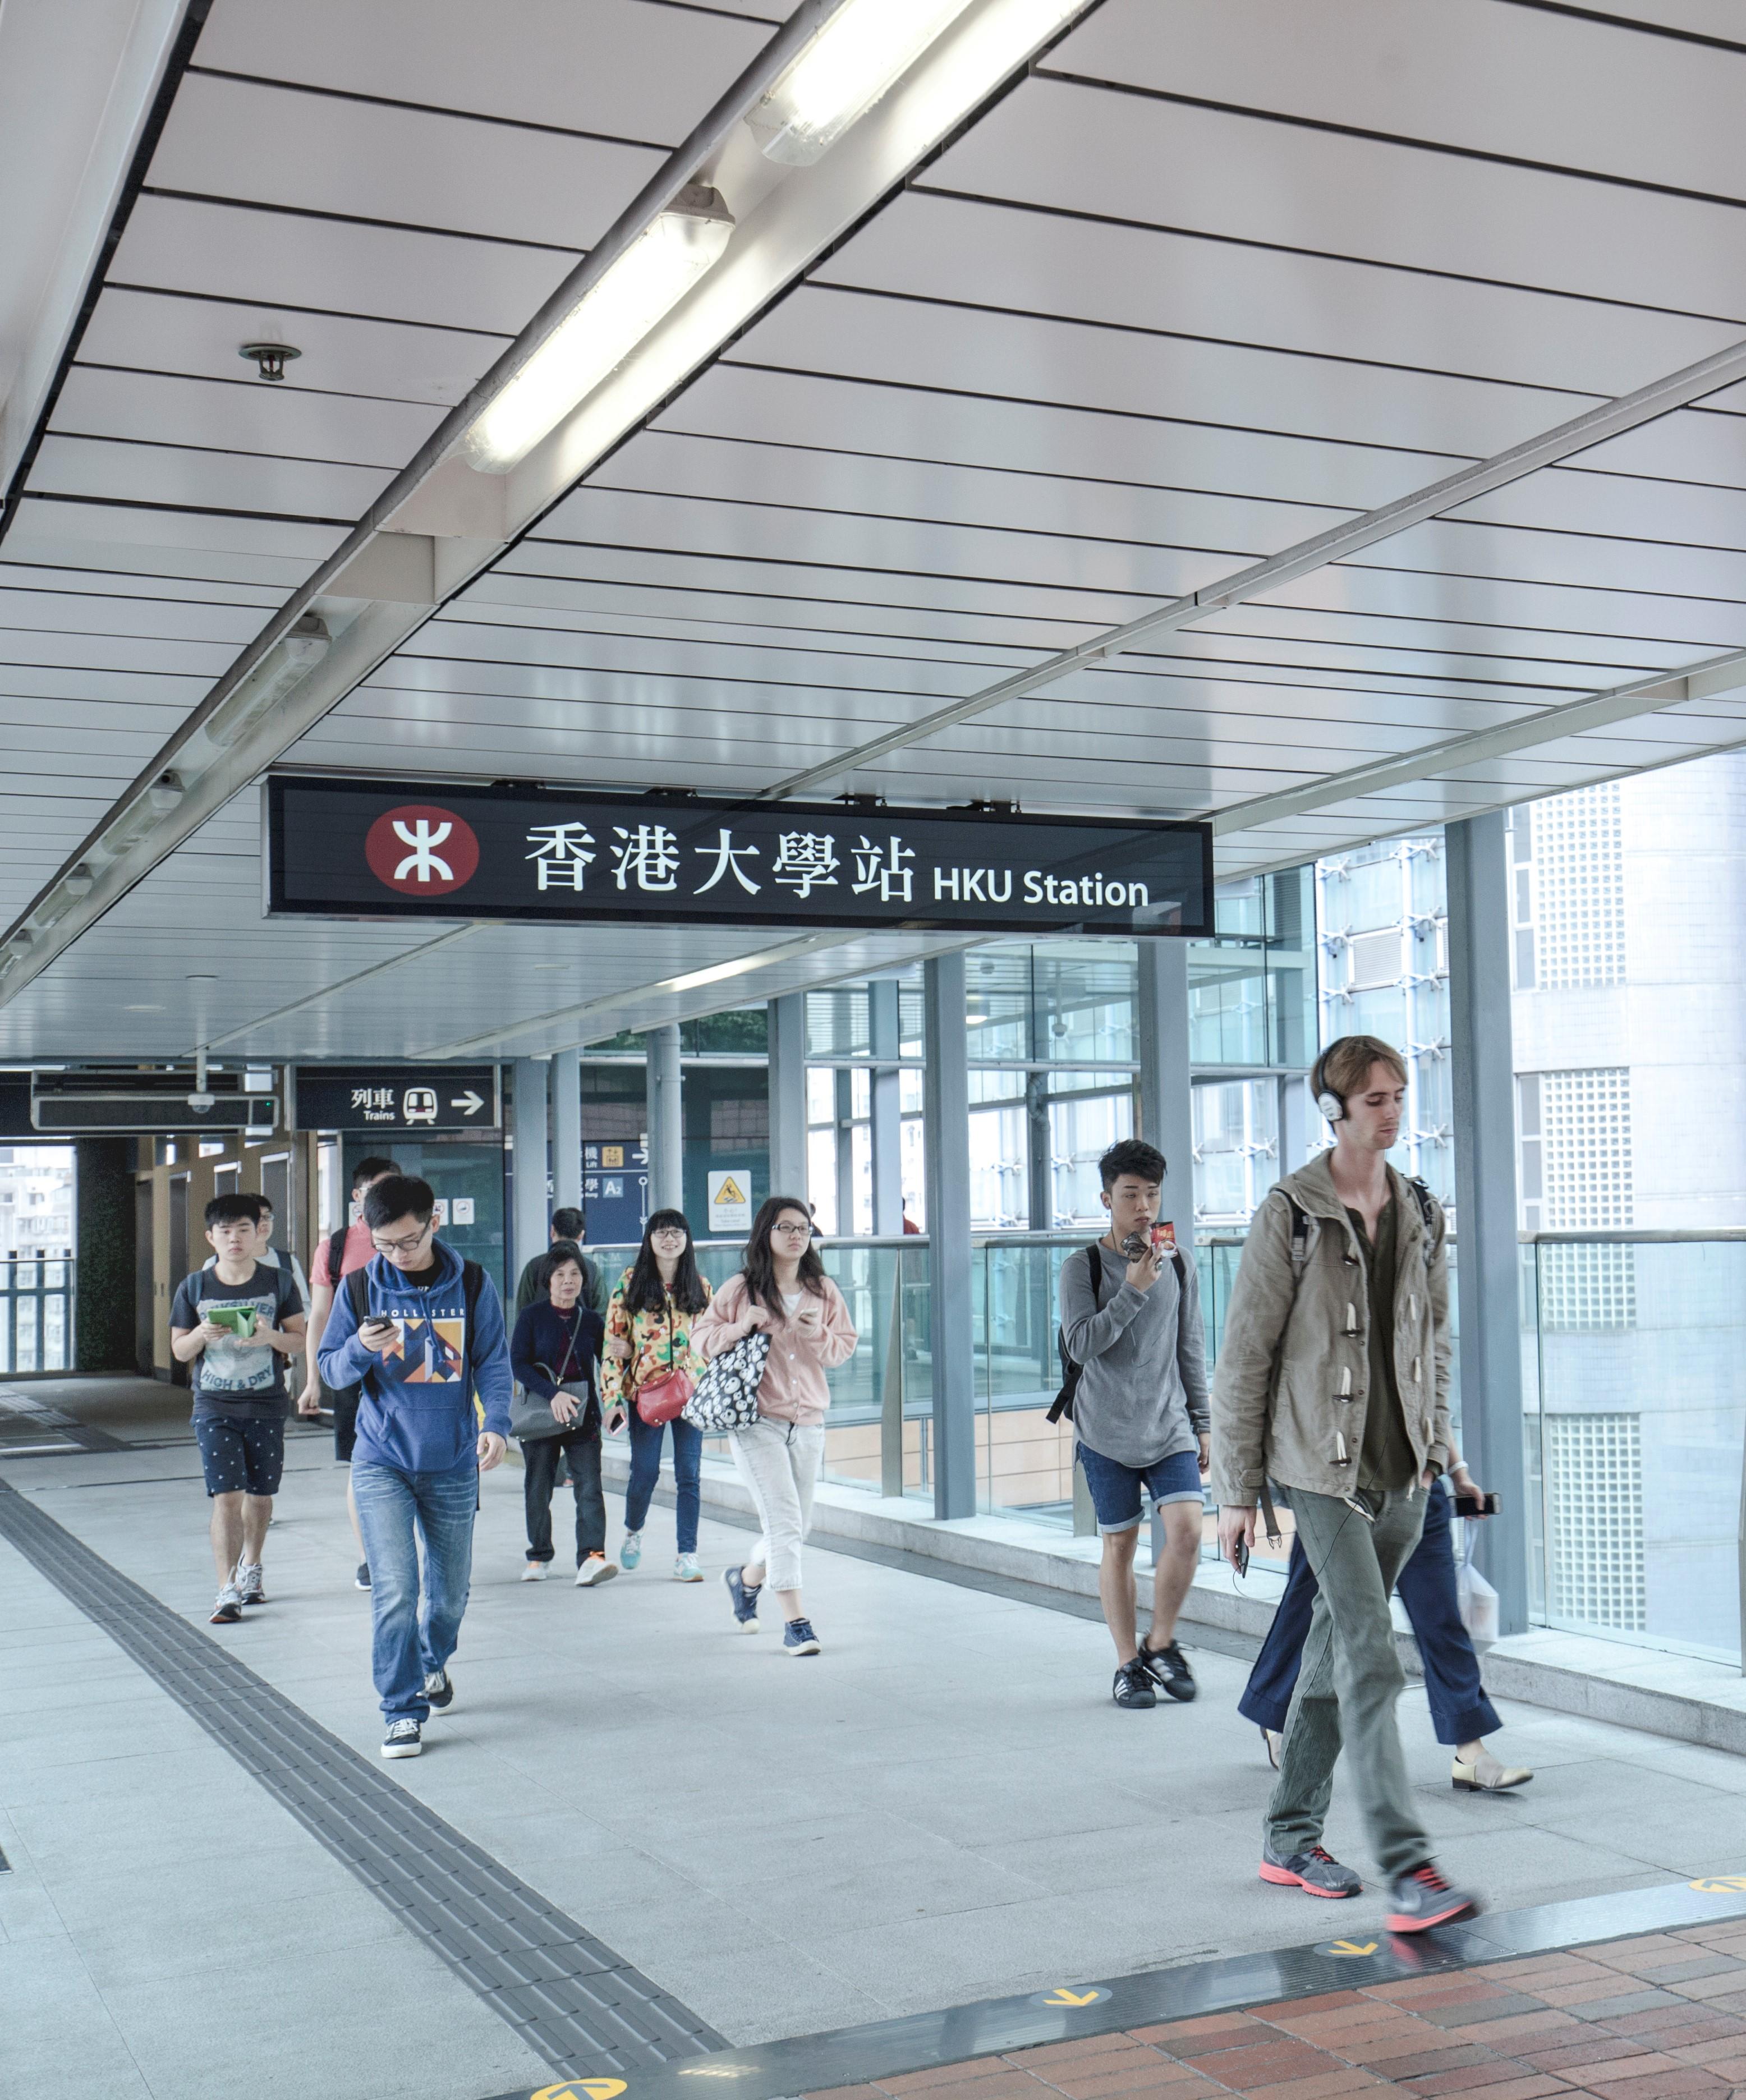 The University of Hong Kong MTR station